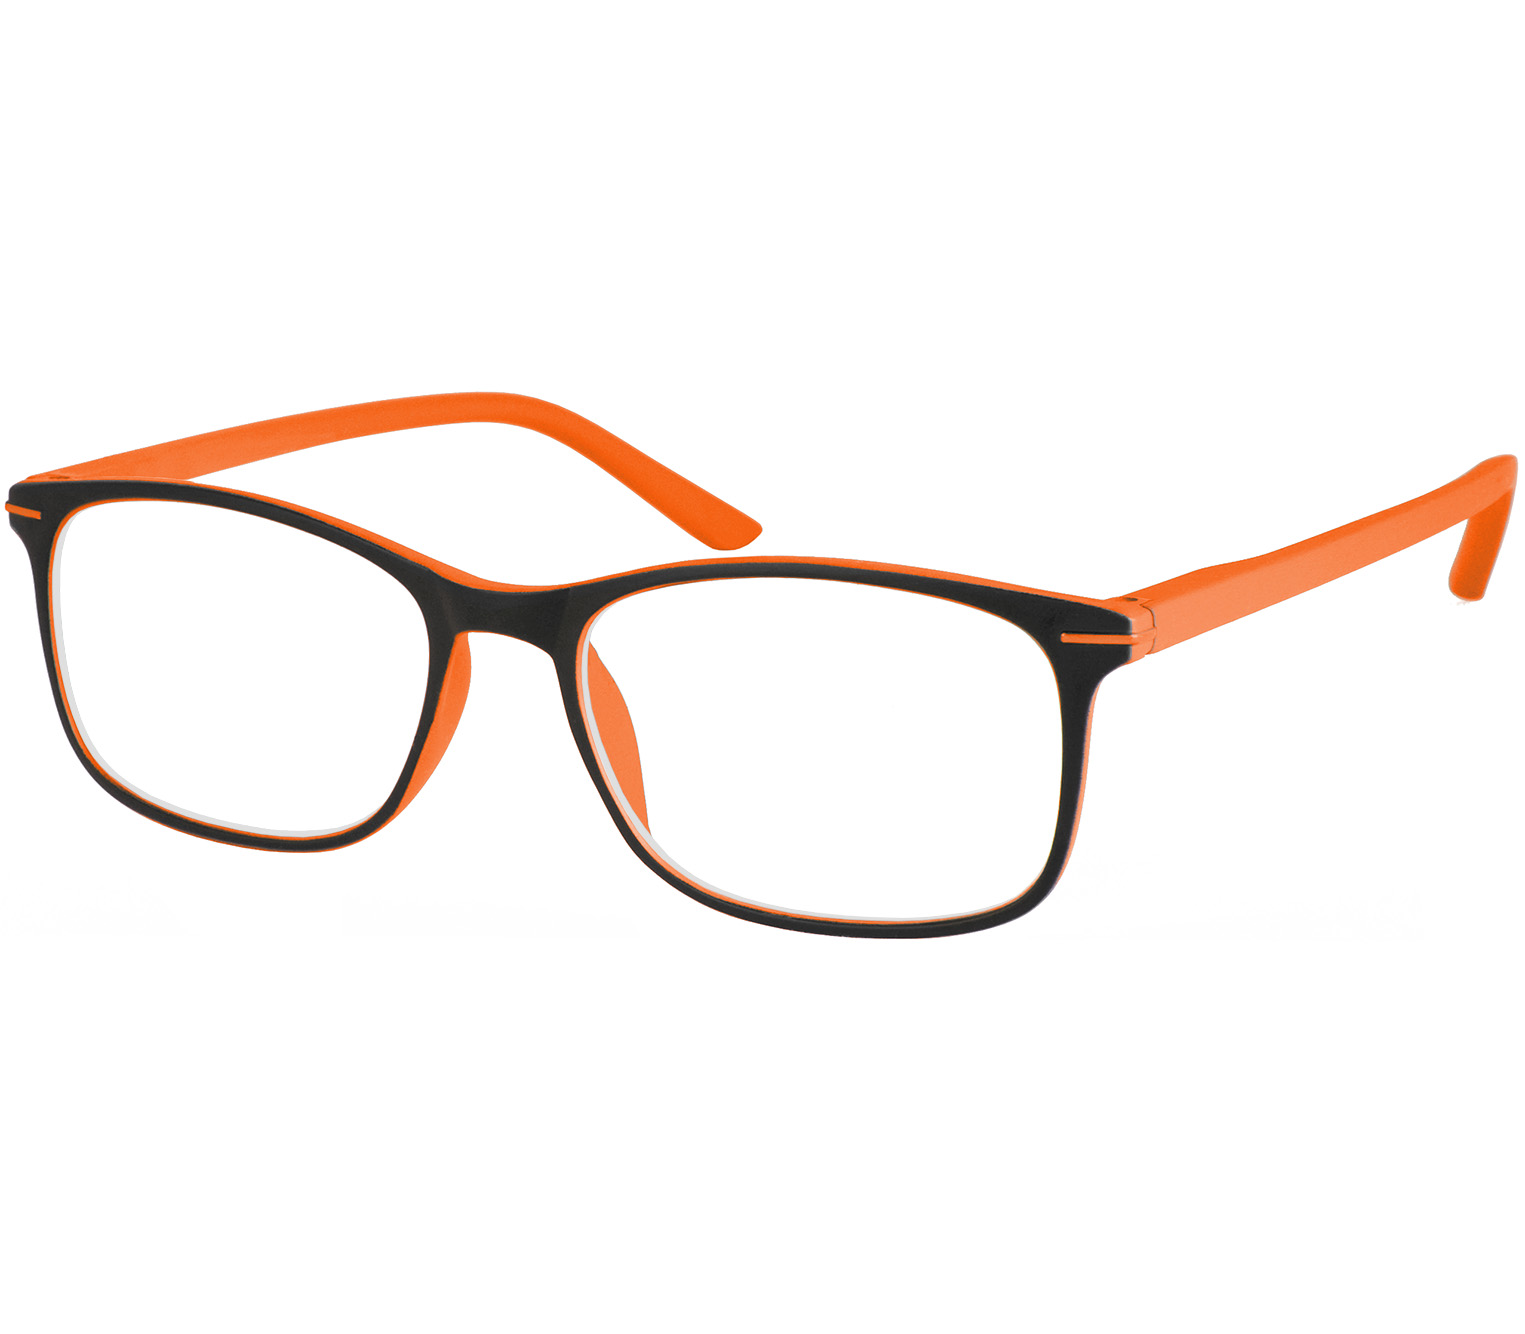 Main Image (Angle) - Jazz (Orange) Classic Reading Glasses